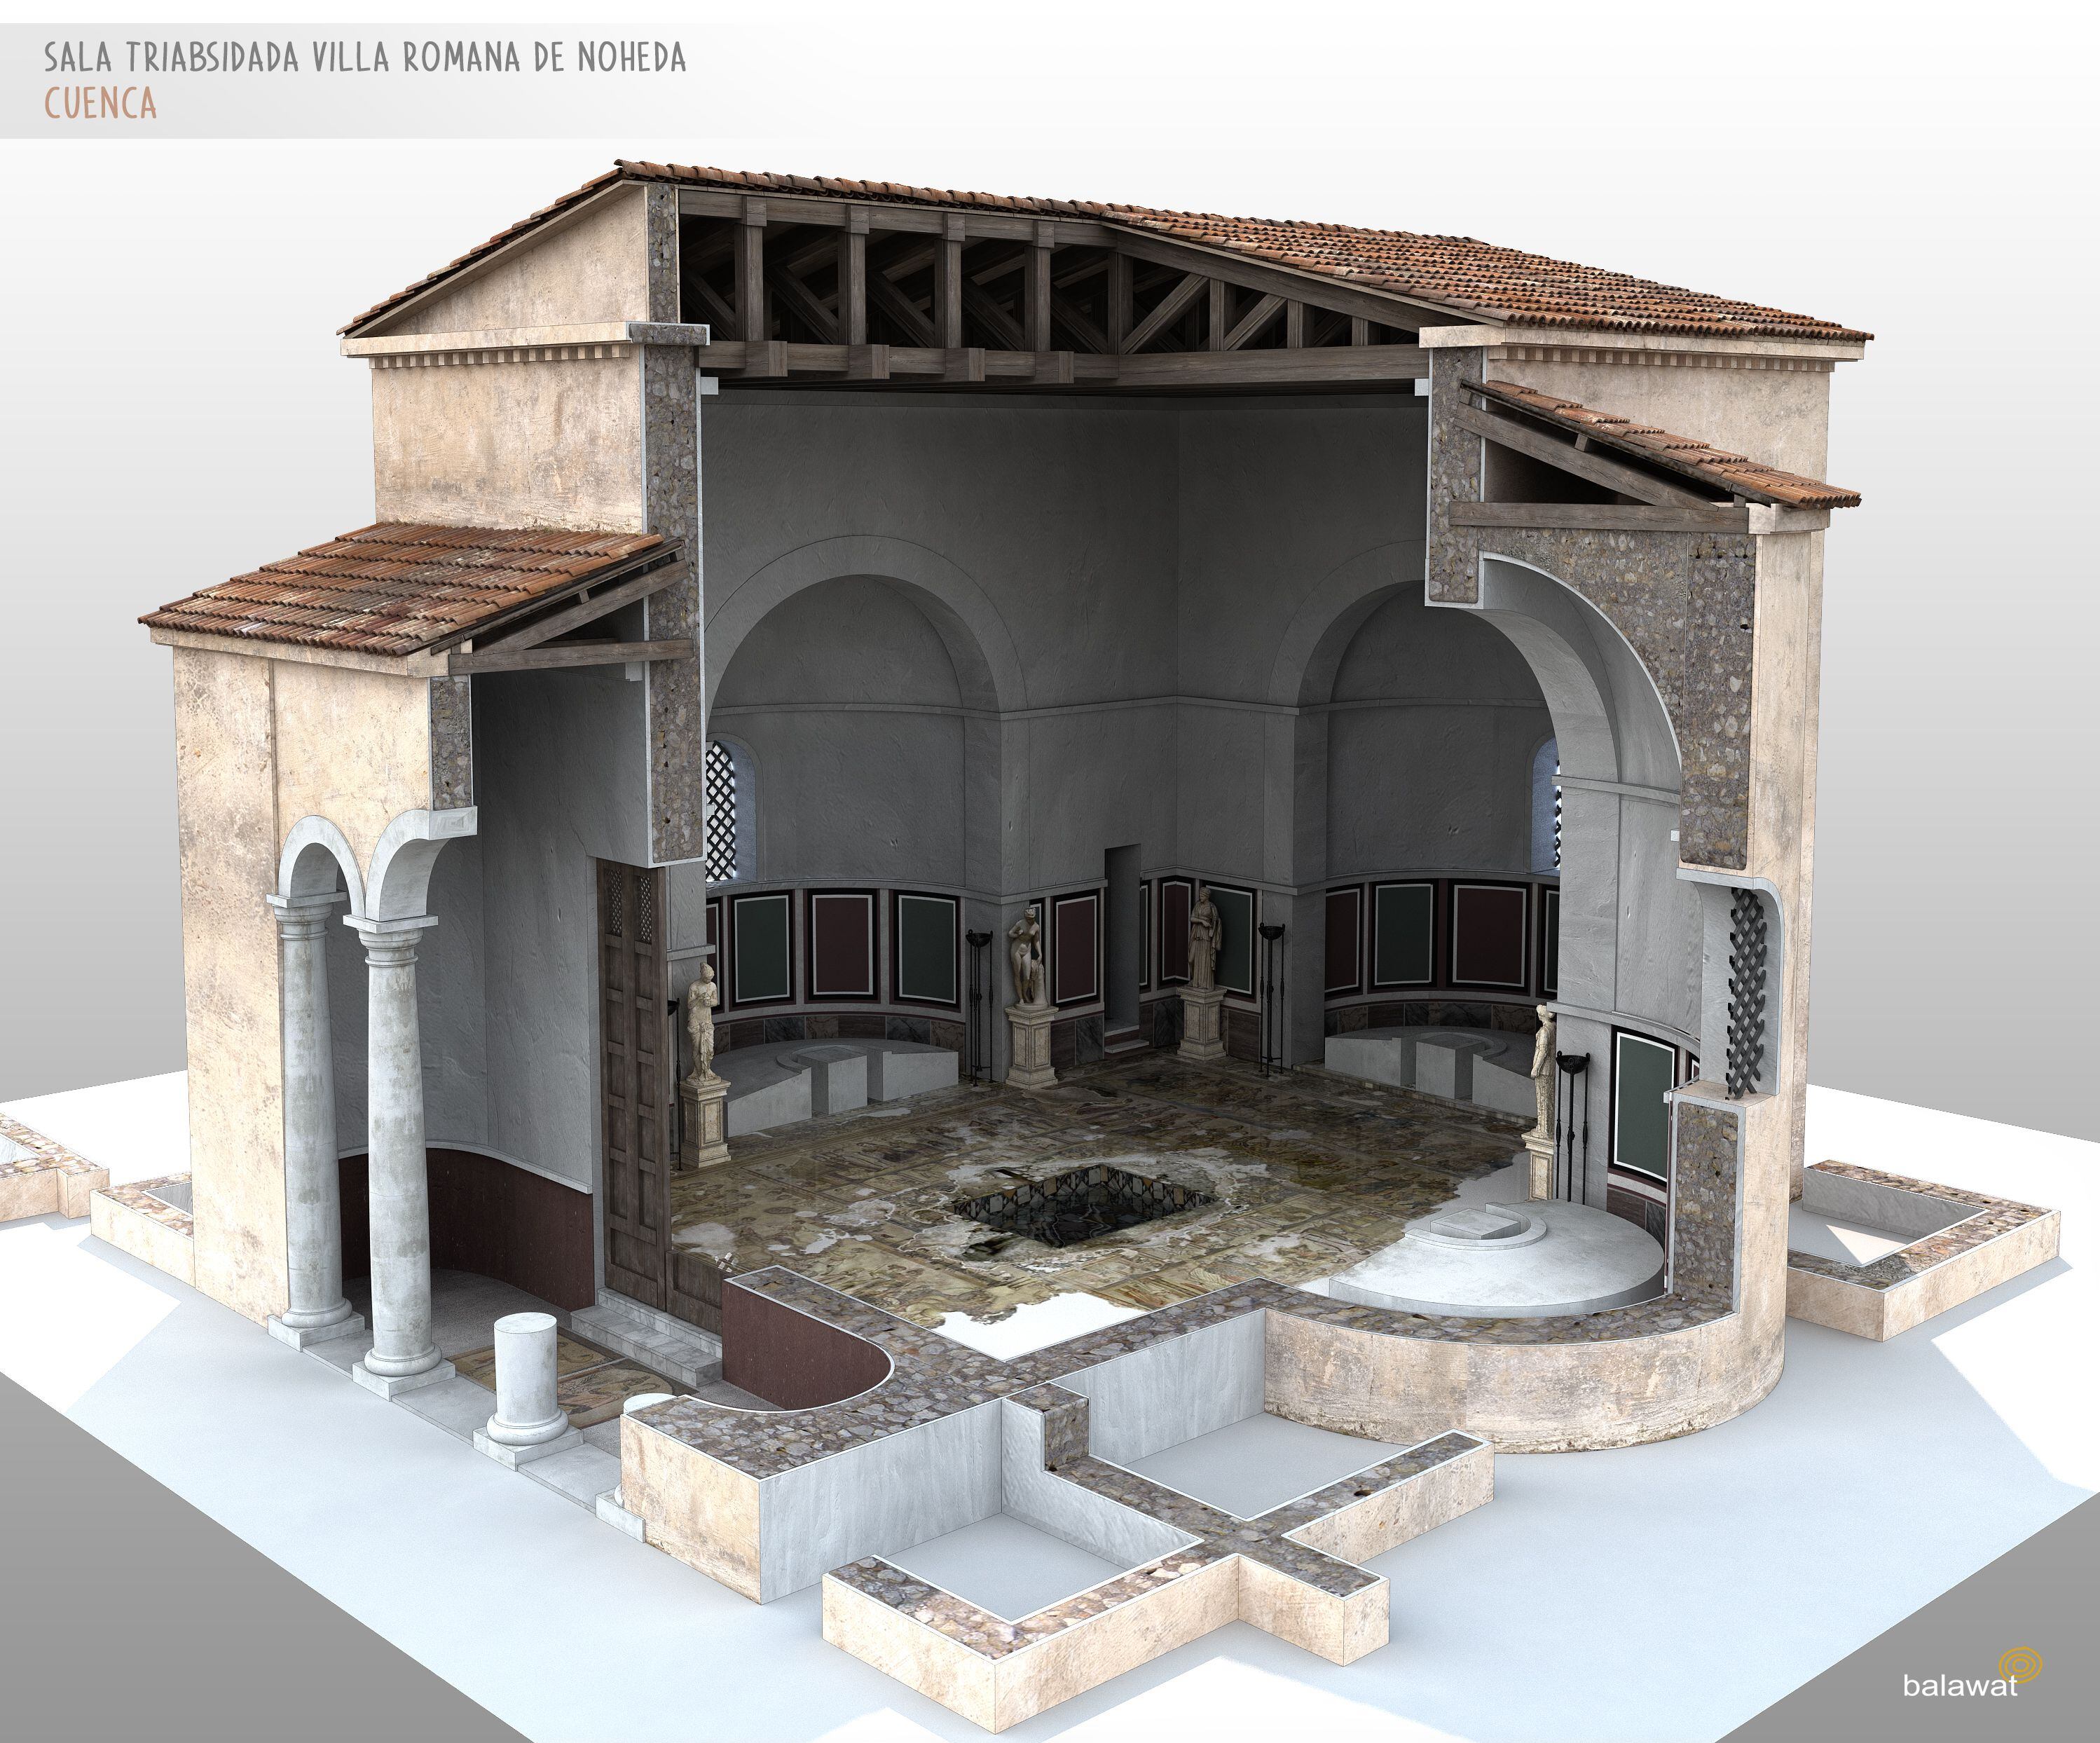 Reconstrucción digital del 'triclinium' de la villa de Noheda.